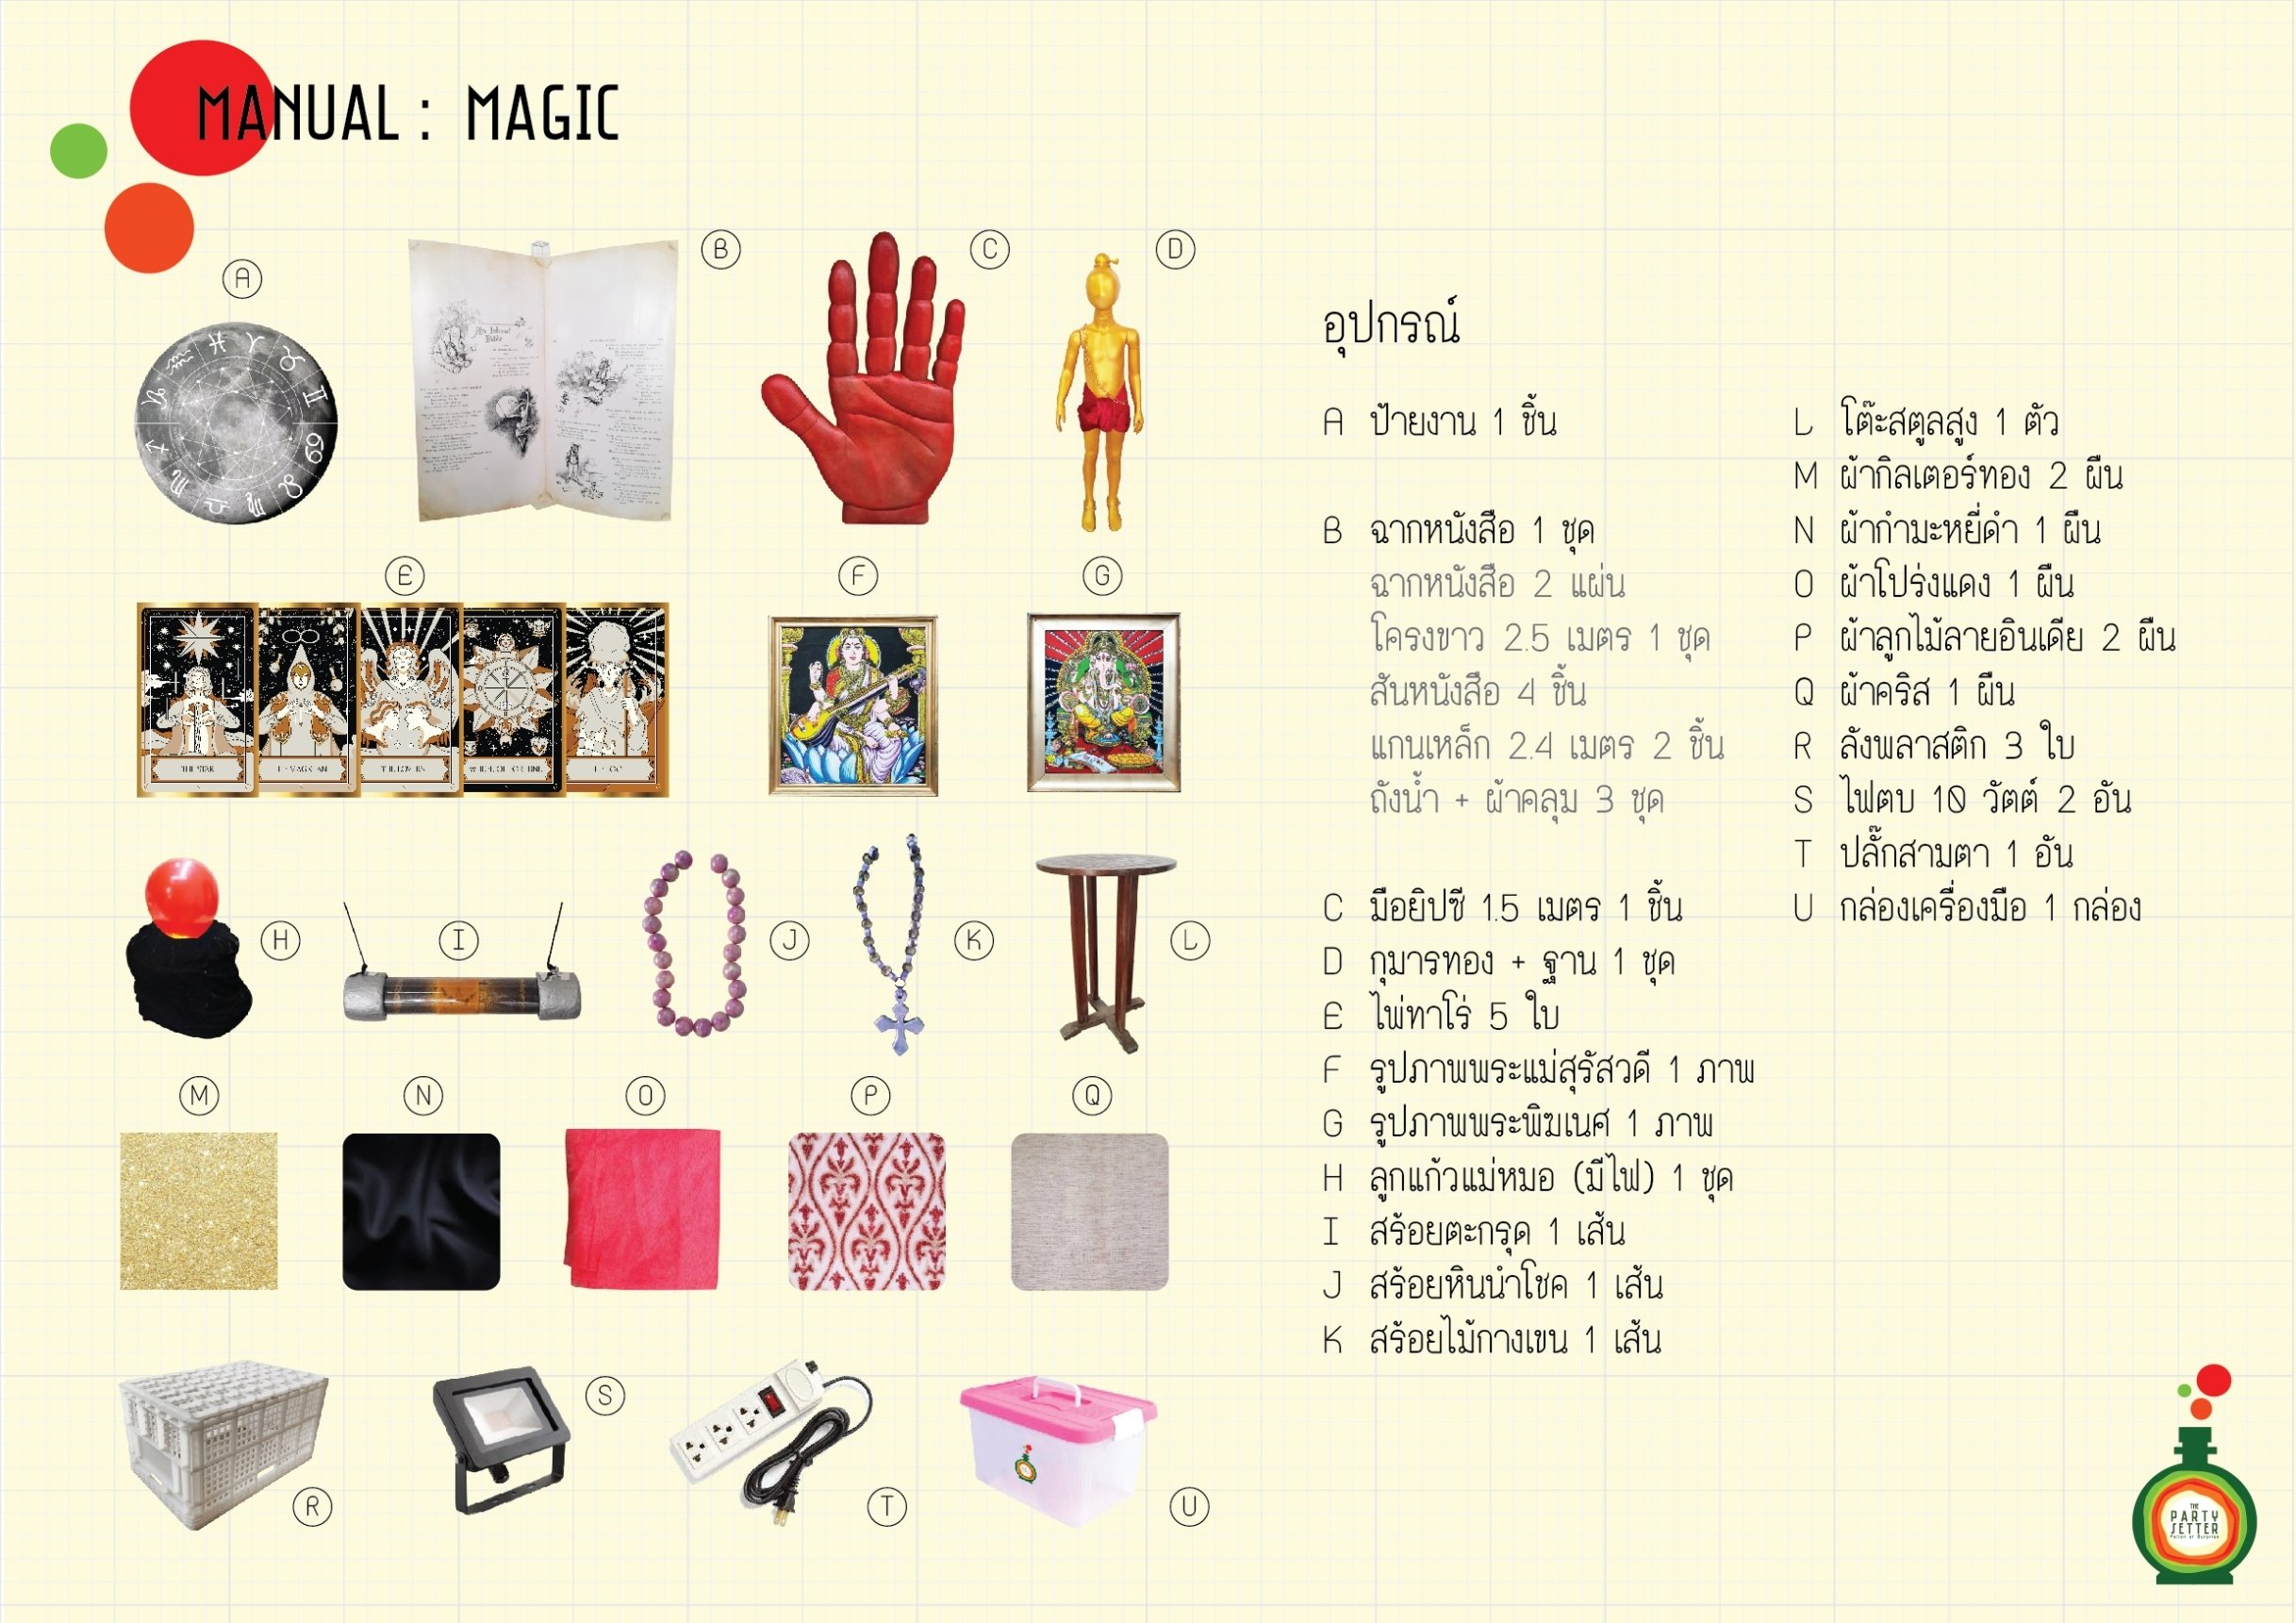 Manual_Magic_00-01.jpg